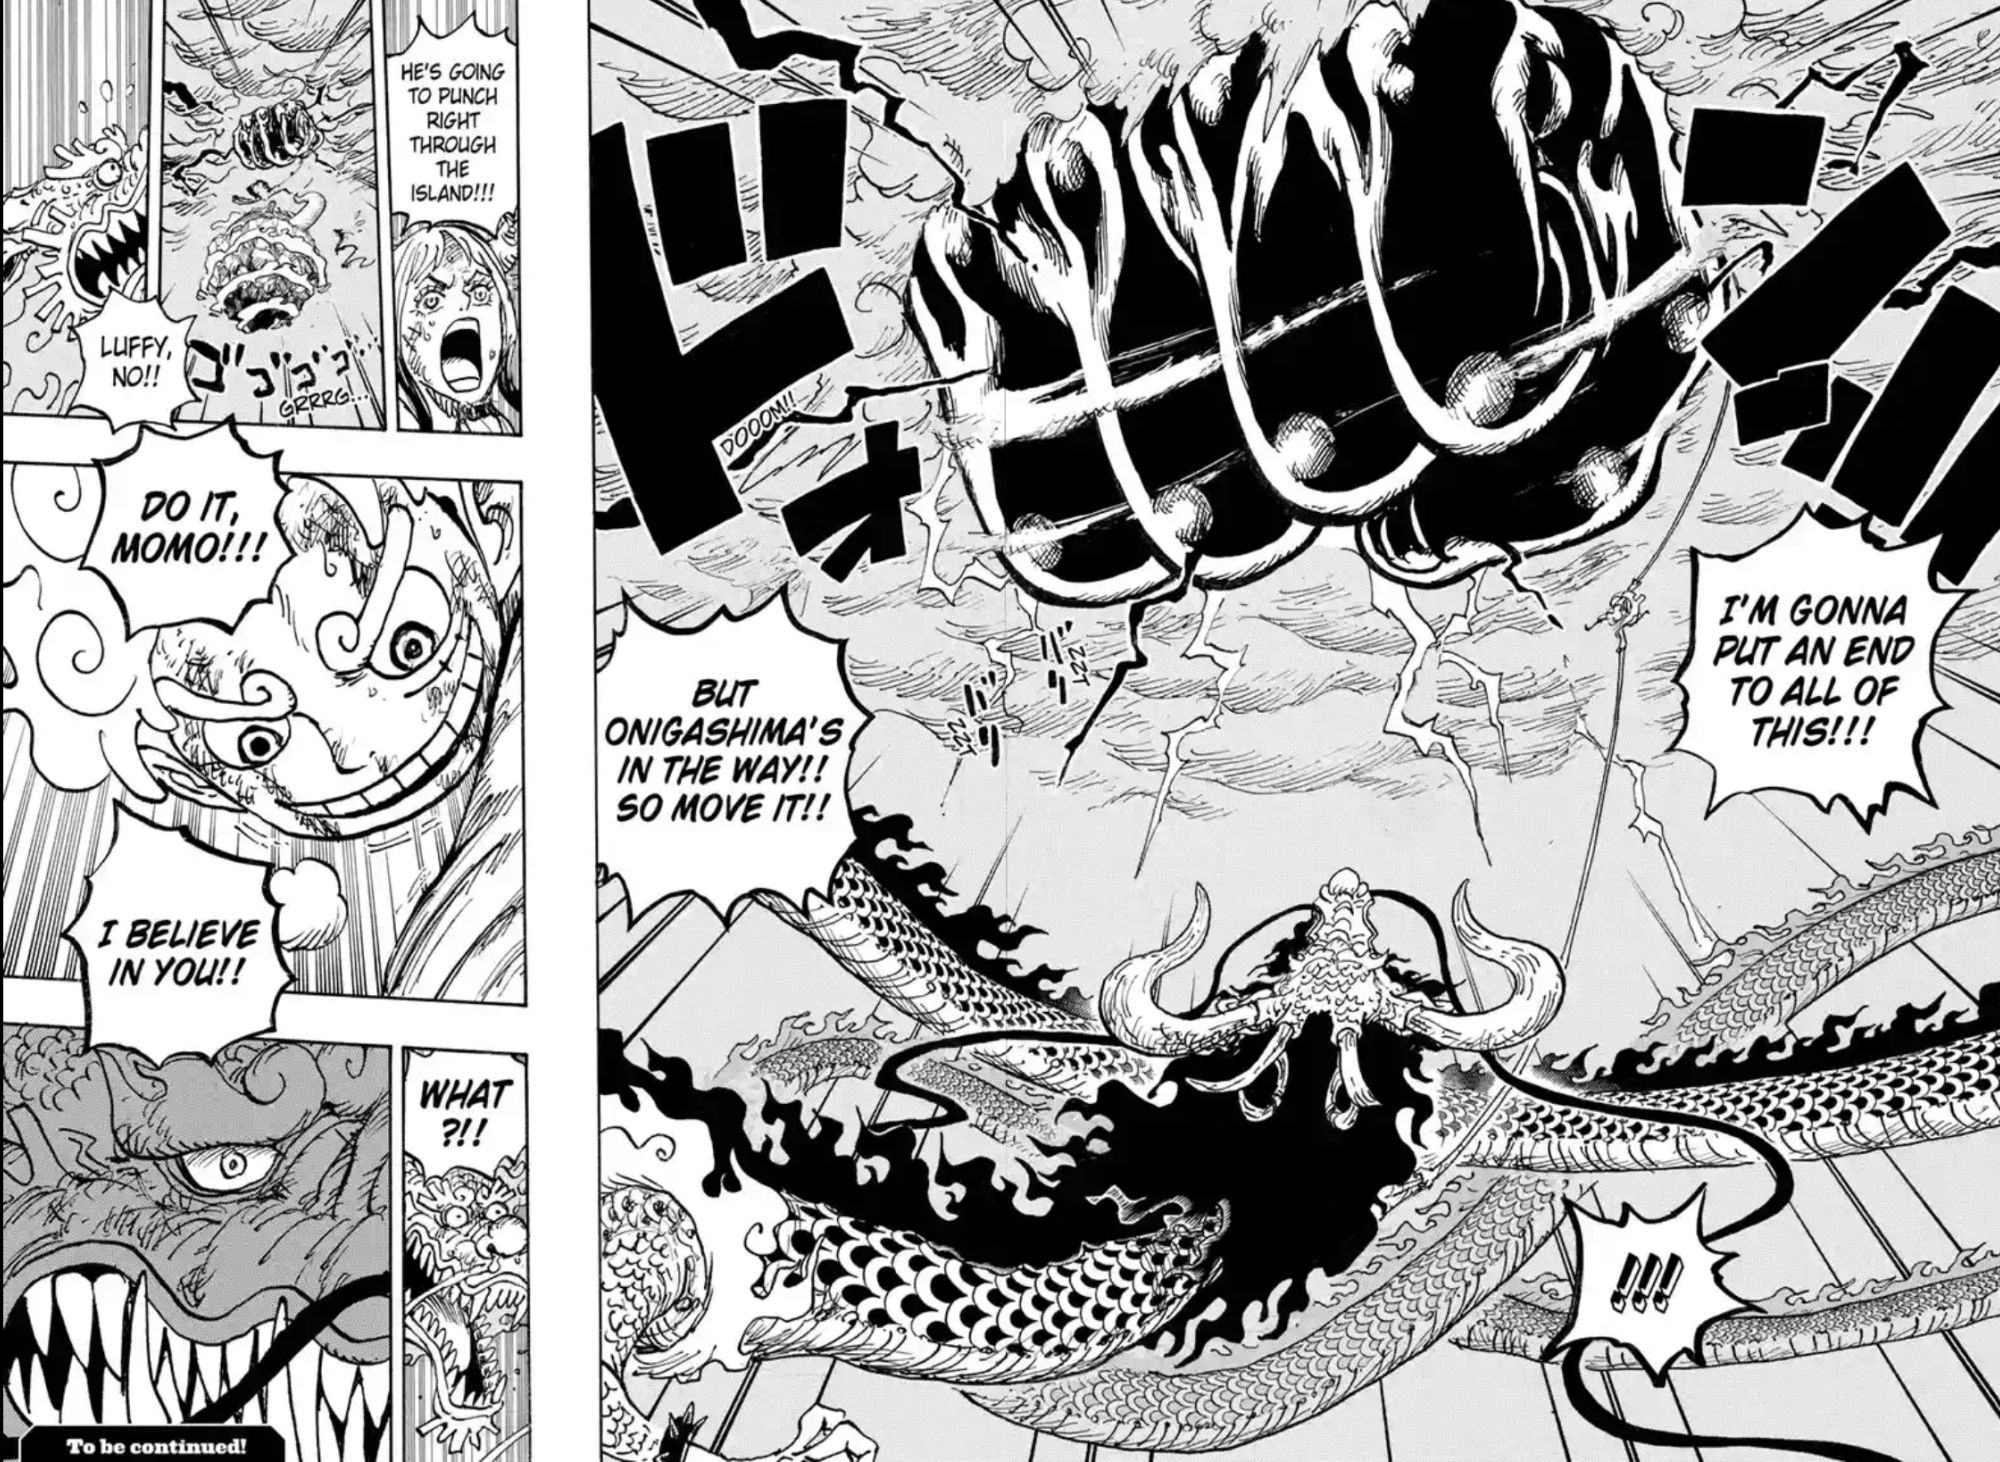 One-Piece-Chapter-1047-Luffy-Kaido-Momonosuke-Yamato-Finish-Fight